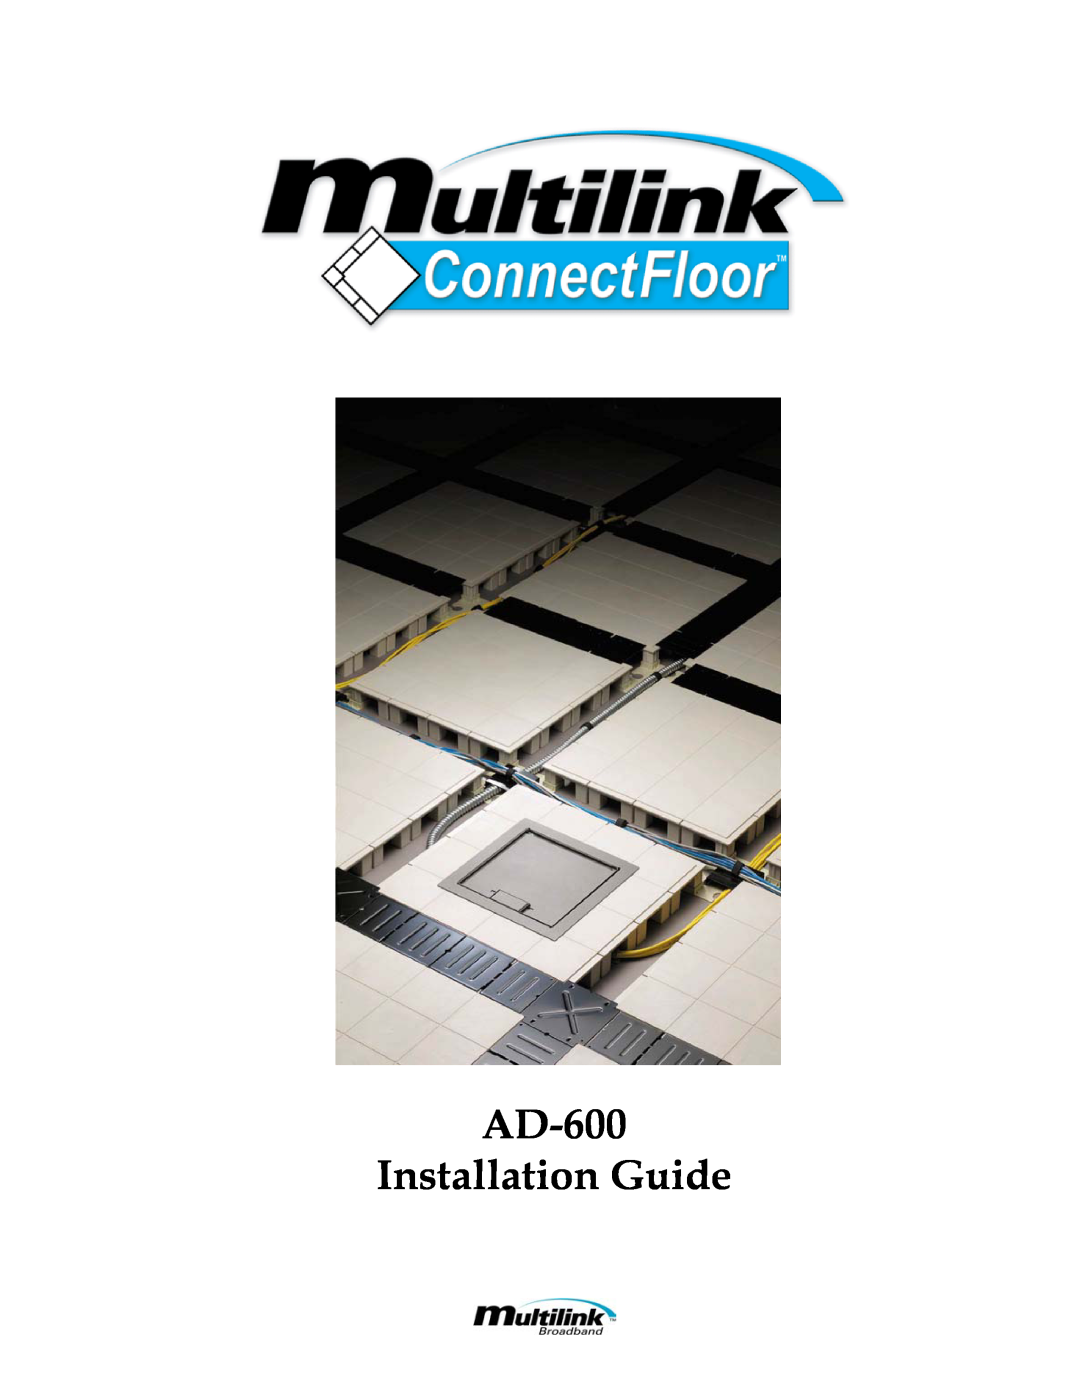 Multi-Link ConnectFloor manual AD-600 Installation Guide 